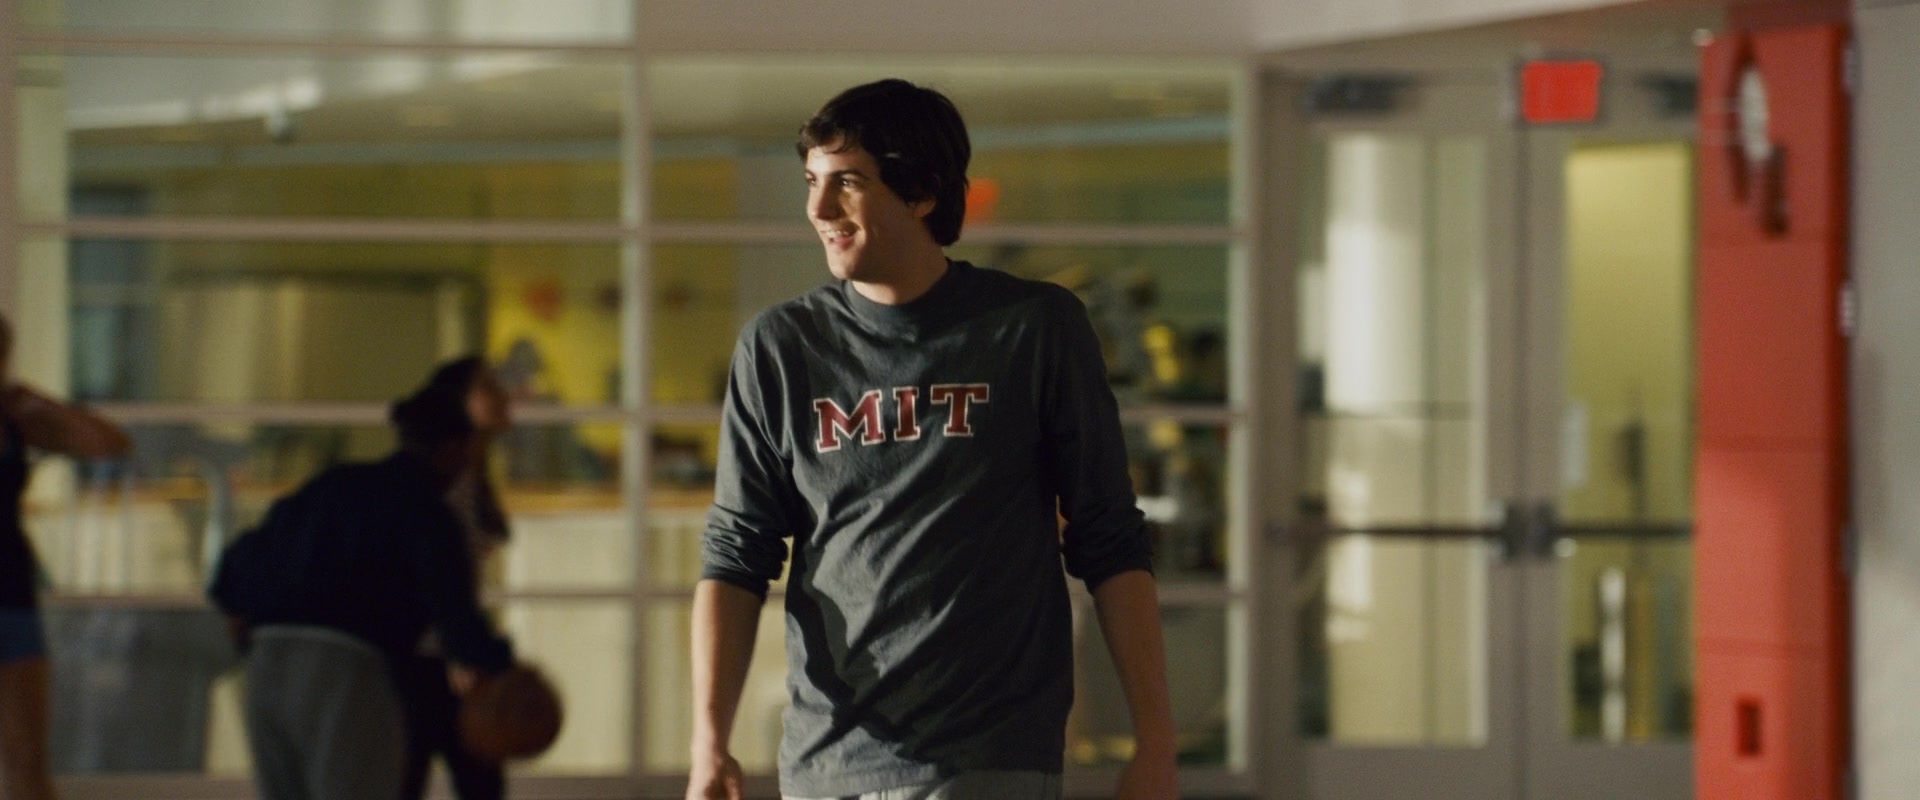 MIT T-Shirt Worn by Jim Sturgess in 21 (2008) Movie